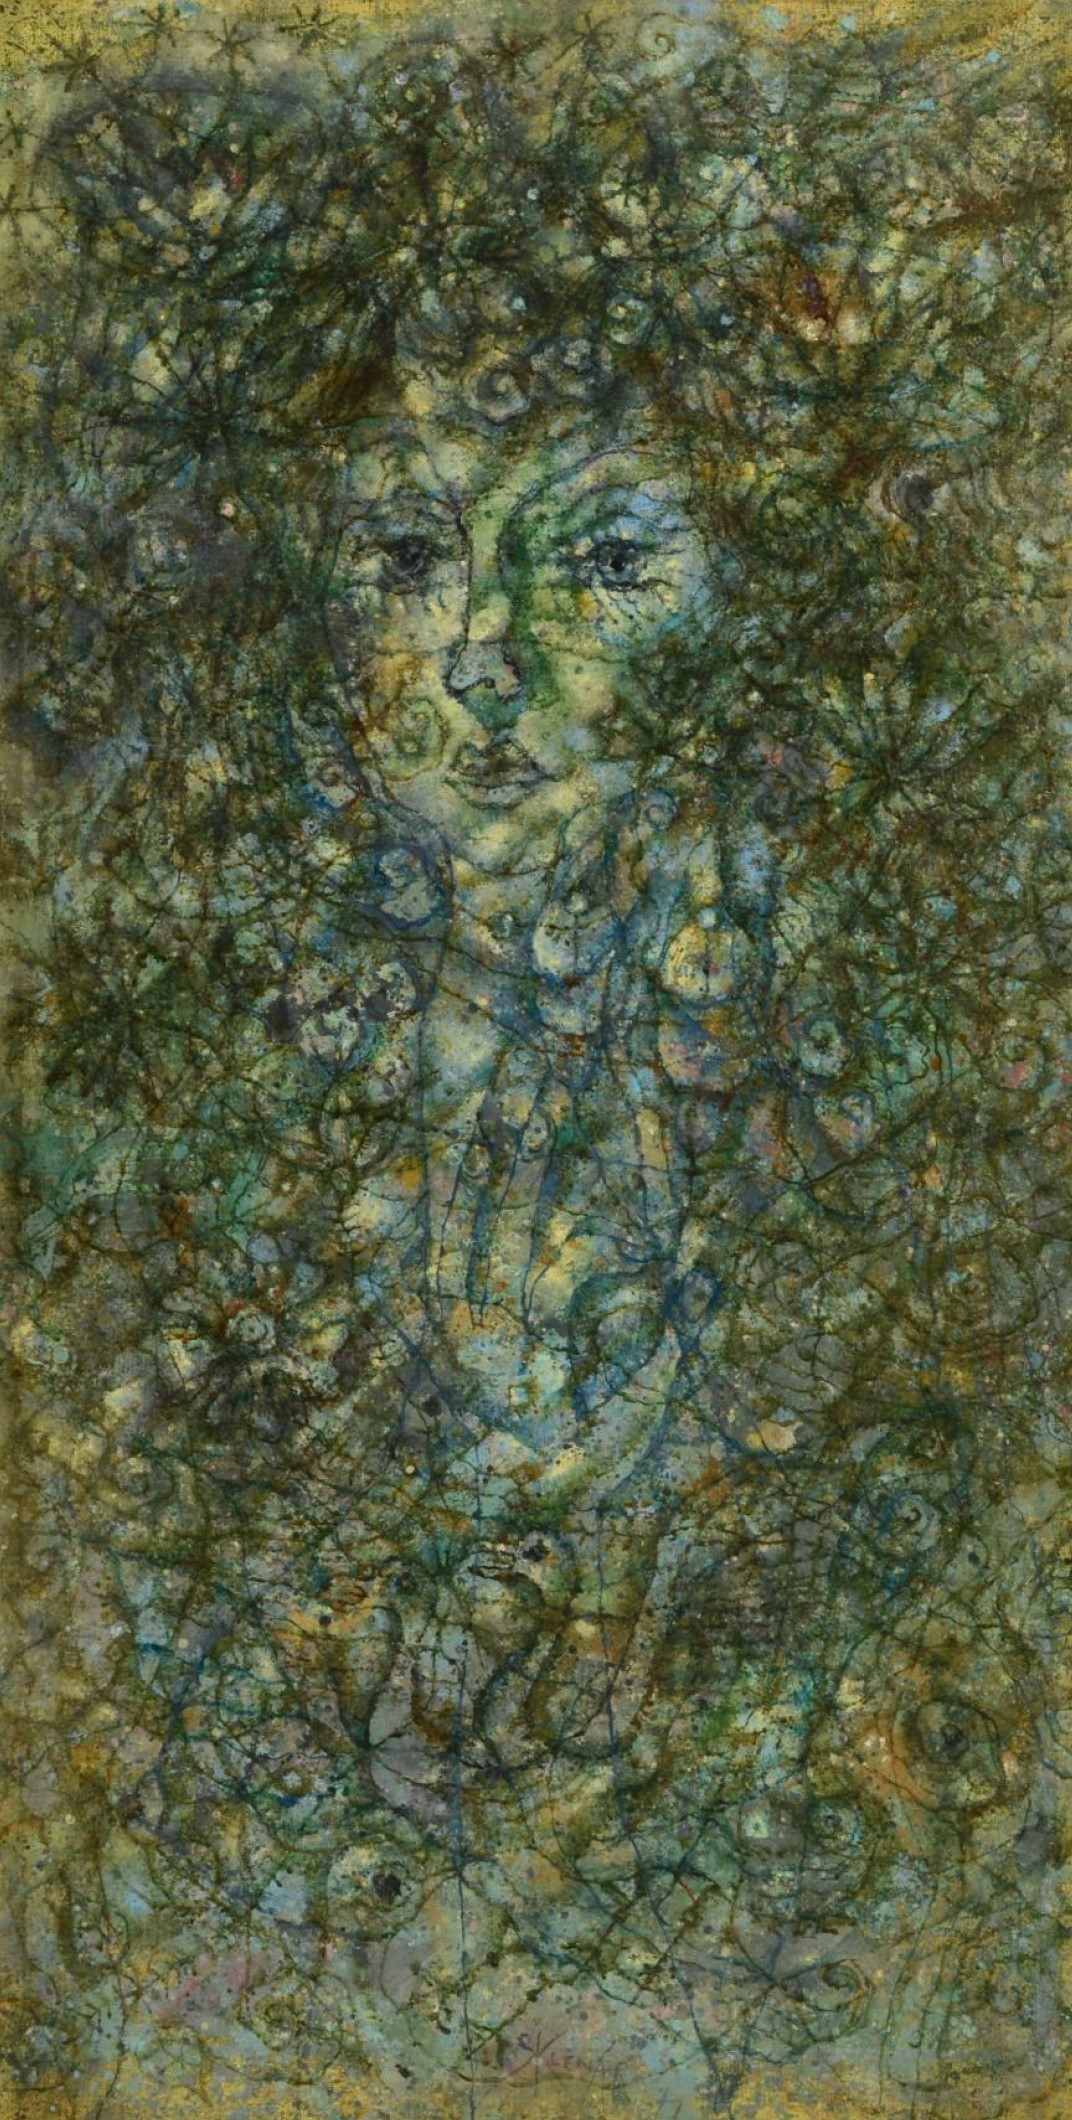 Zdeněk Sklenář: Poesie, 1977, olej na plátně, 99,5 x 53 cm, Aukční dům Zezula 28. 5. 2022, cena: 6 840 000 Kč 